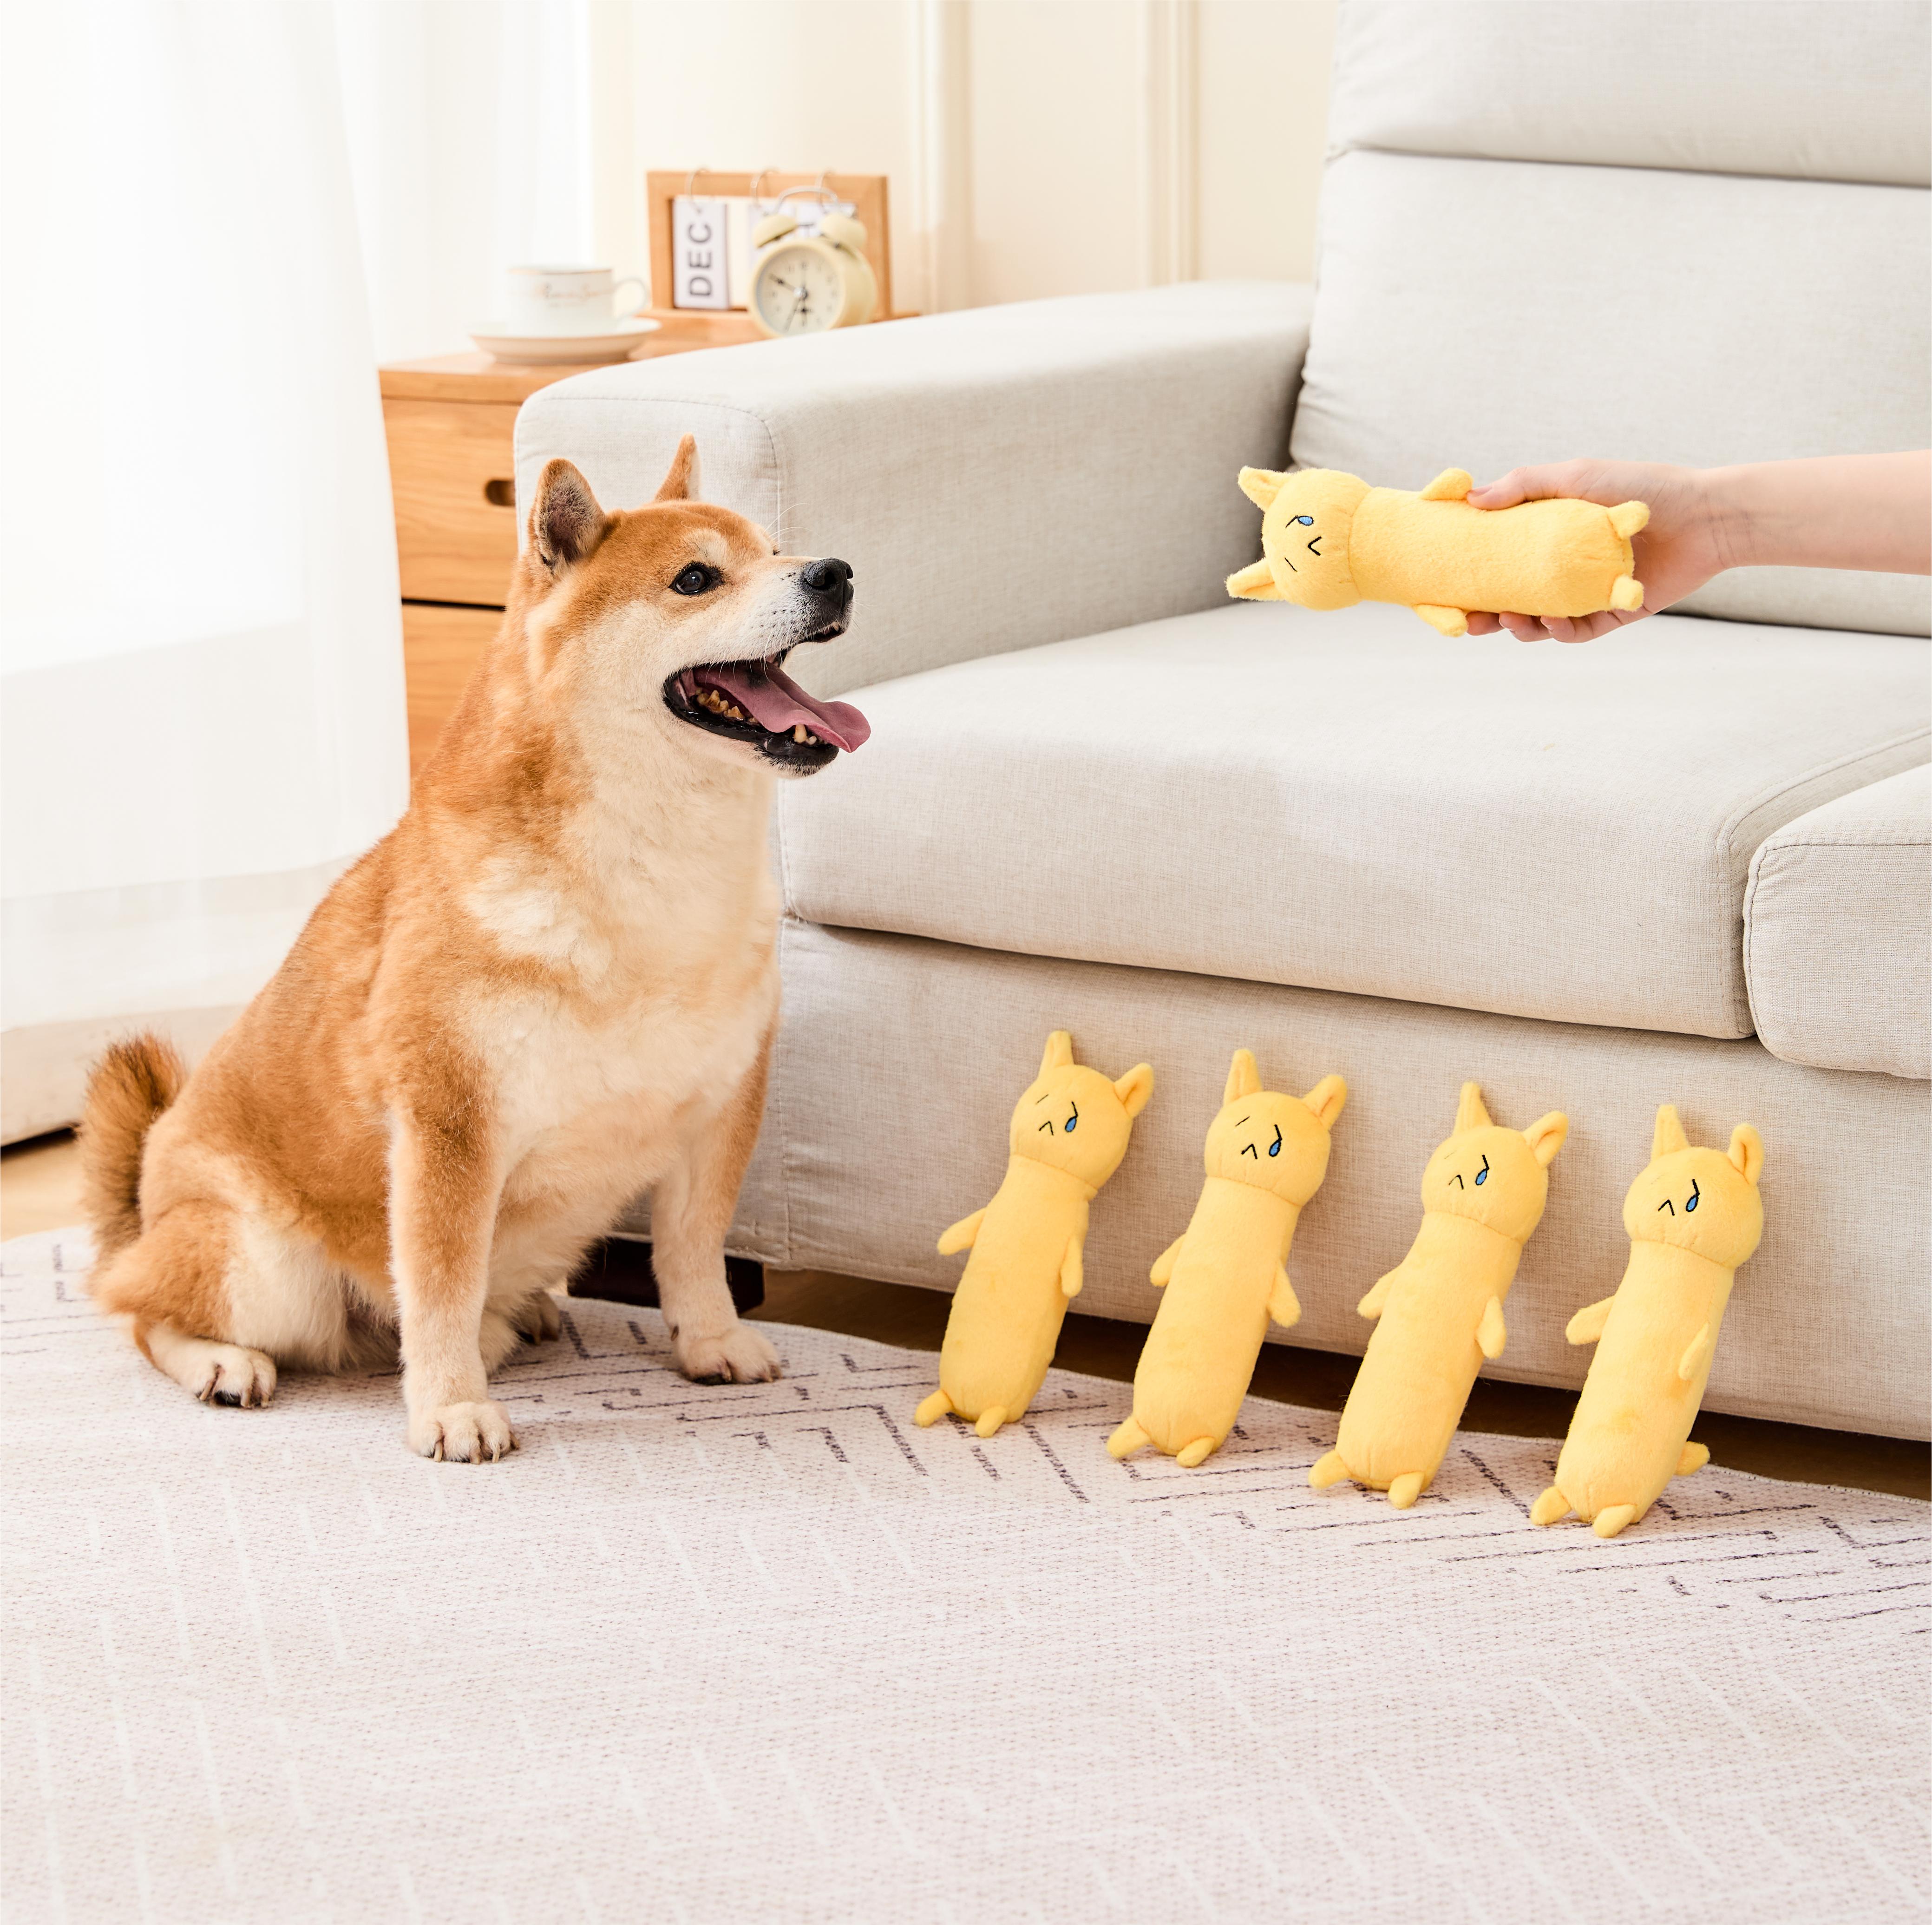 黄色の長い犬のきしむおもちゃインタラクティブ犬のおもちゃタフな犬のおもちゃ犬咀嚼のおもちゃカスタム愛らしい柔らかいおもちゃ小型犬用